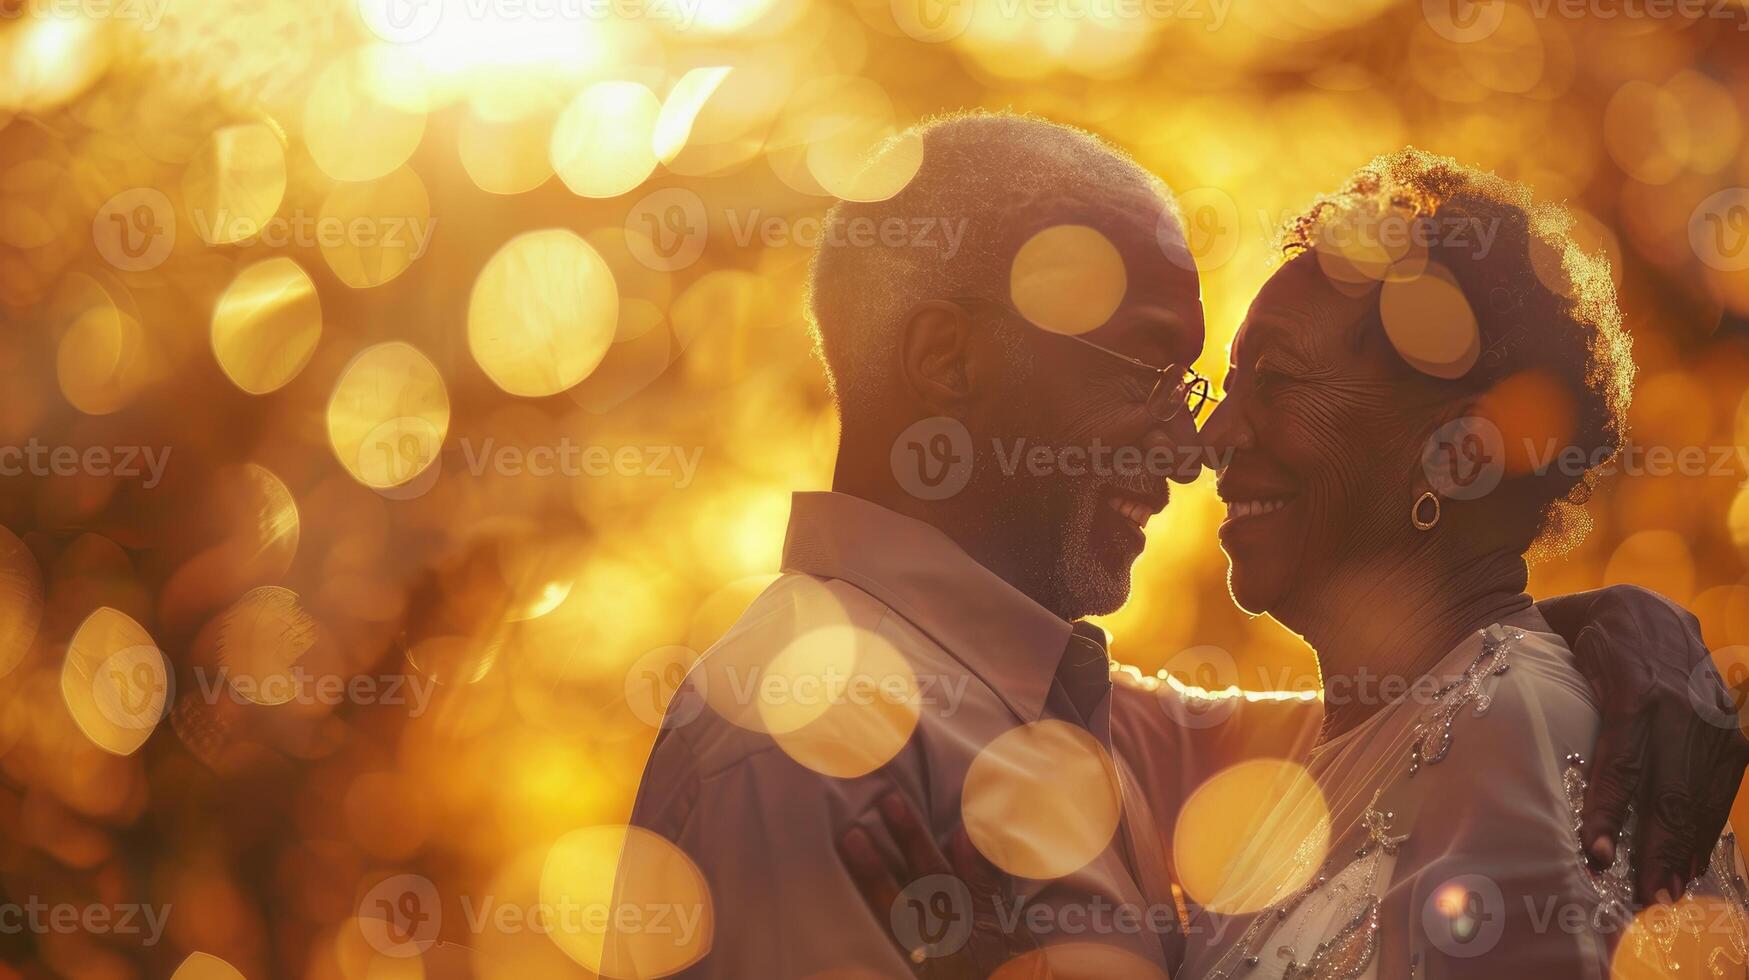 contento romántico afican americano mayor Pareja es abrazando y bailando juntos. bokeh ligero alrededor. foto